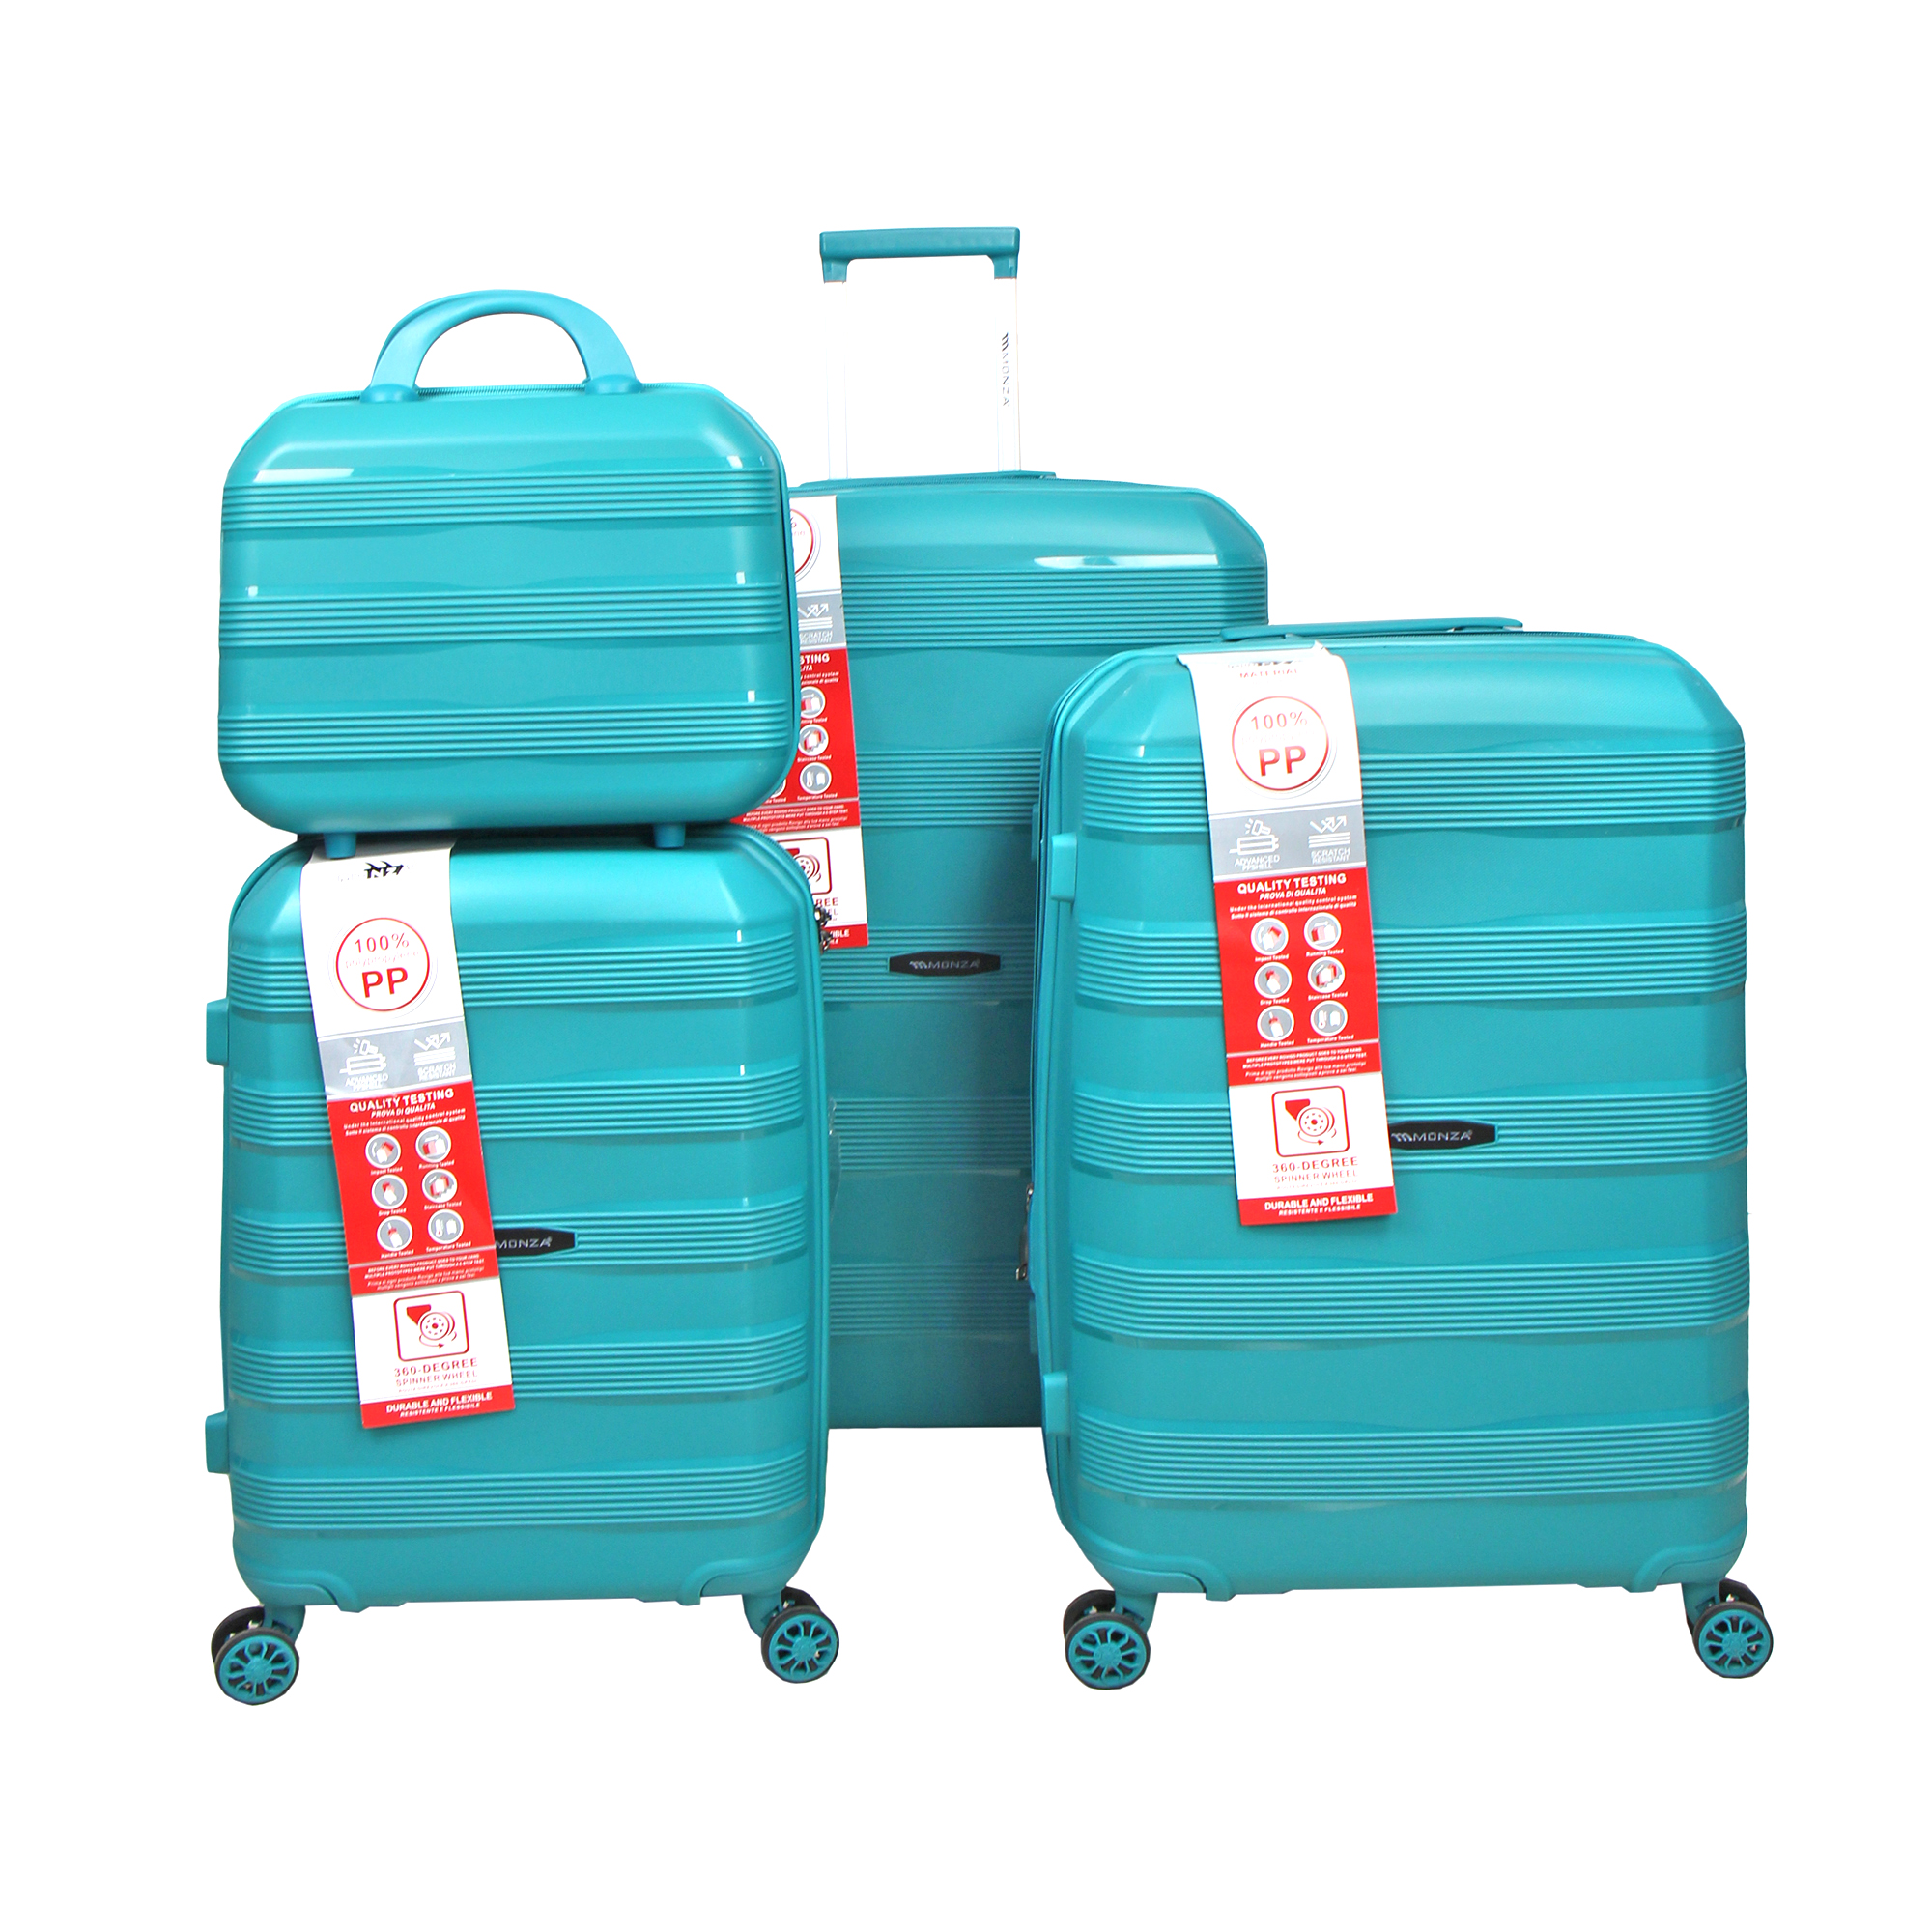 مجموعه چهار عددی چمدان مونزا مدل C0883